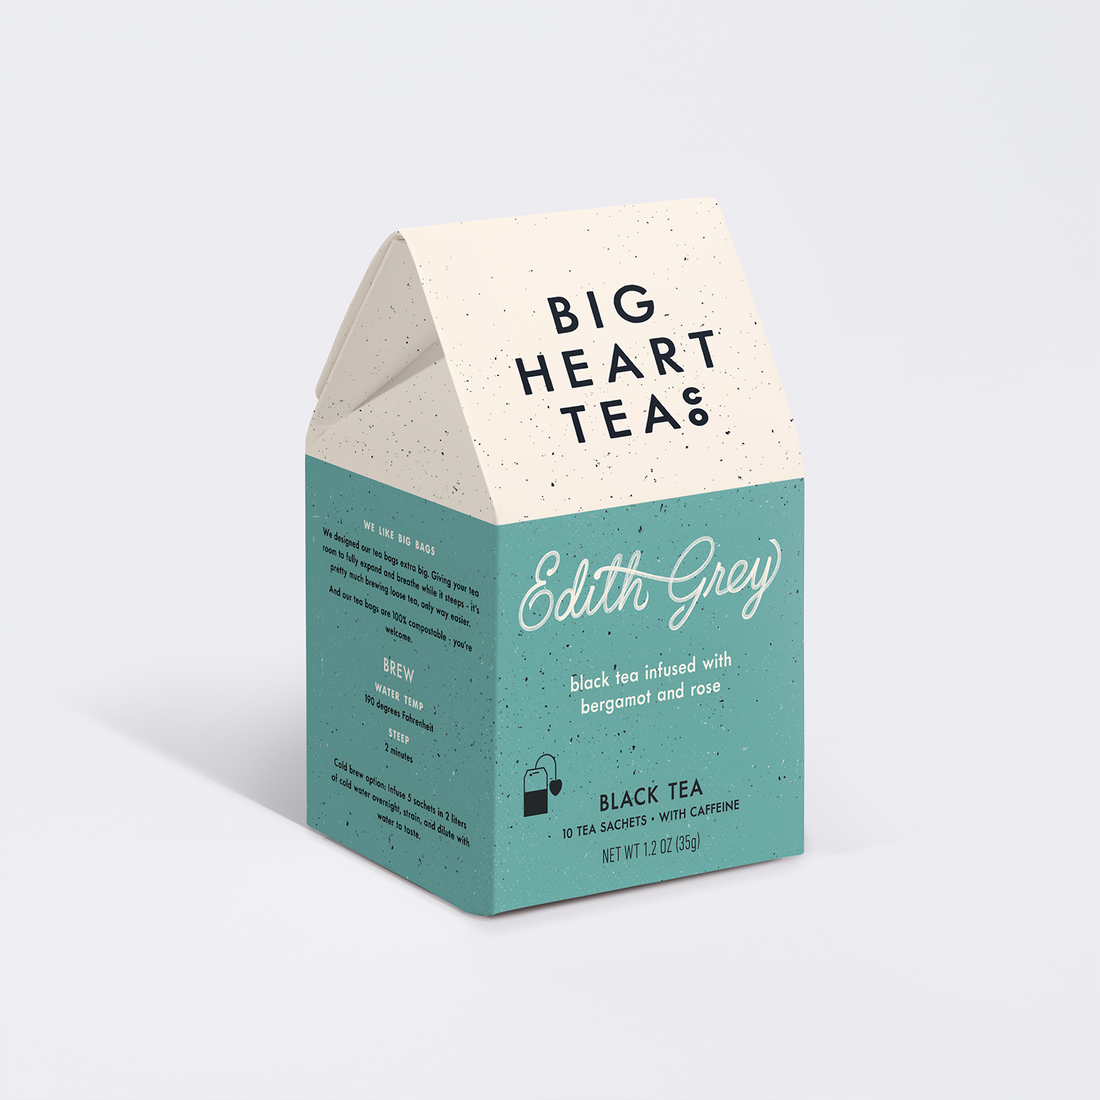 Big Heart Tea Bags - Edith Grey